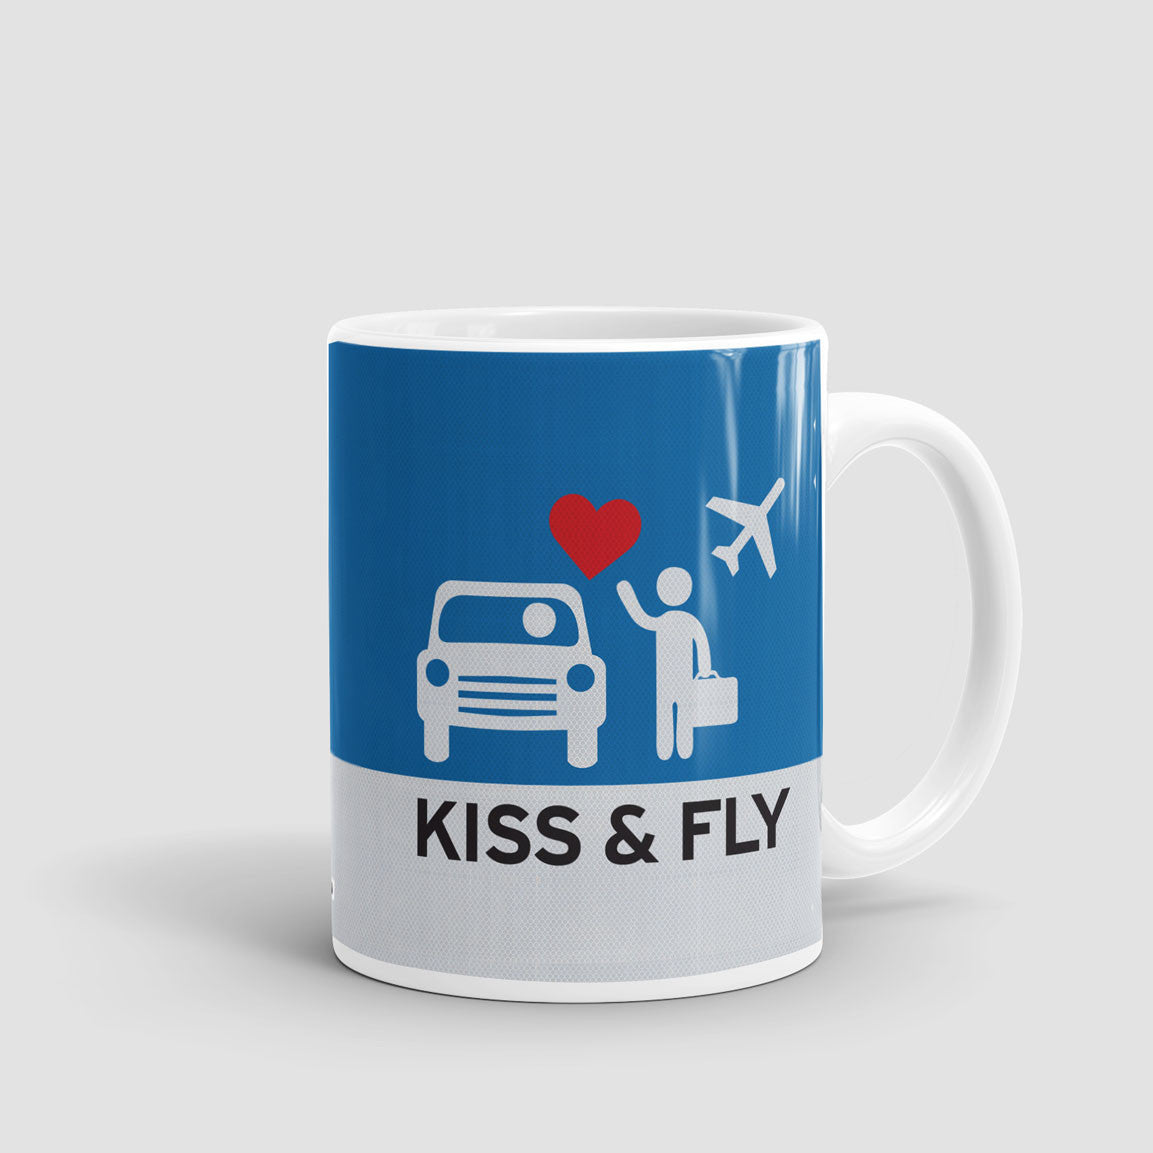 Kiss and Fly - Mug - Airportag